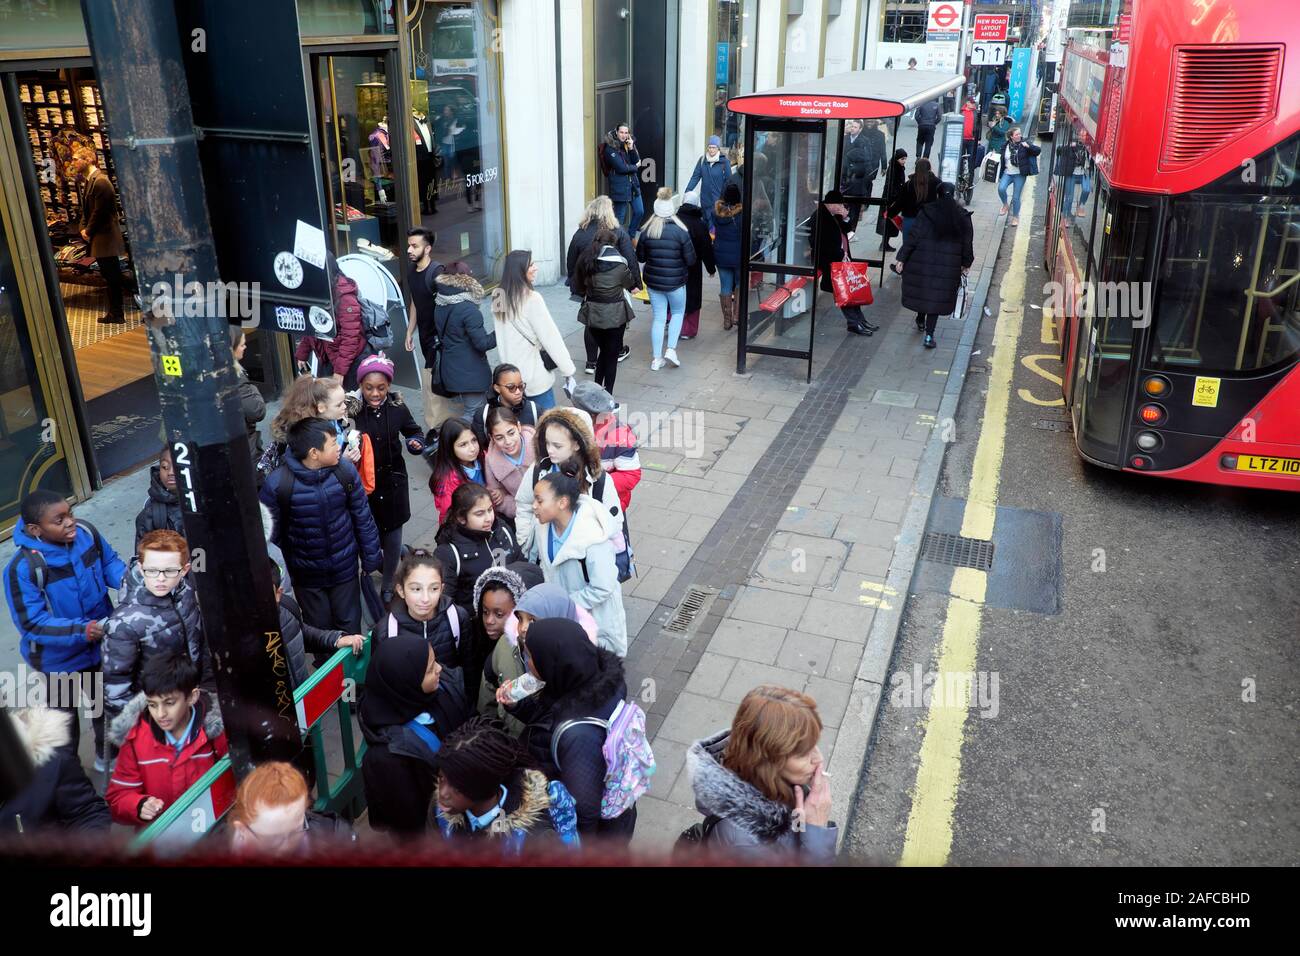 Groupe d'enfants en attente d'un bus sur une visite à Oxford Street à Londres Angleterre Royaume-uni KATHY DEWITT Banque D'Images